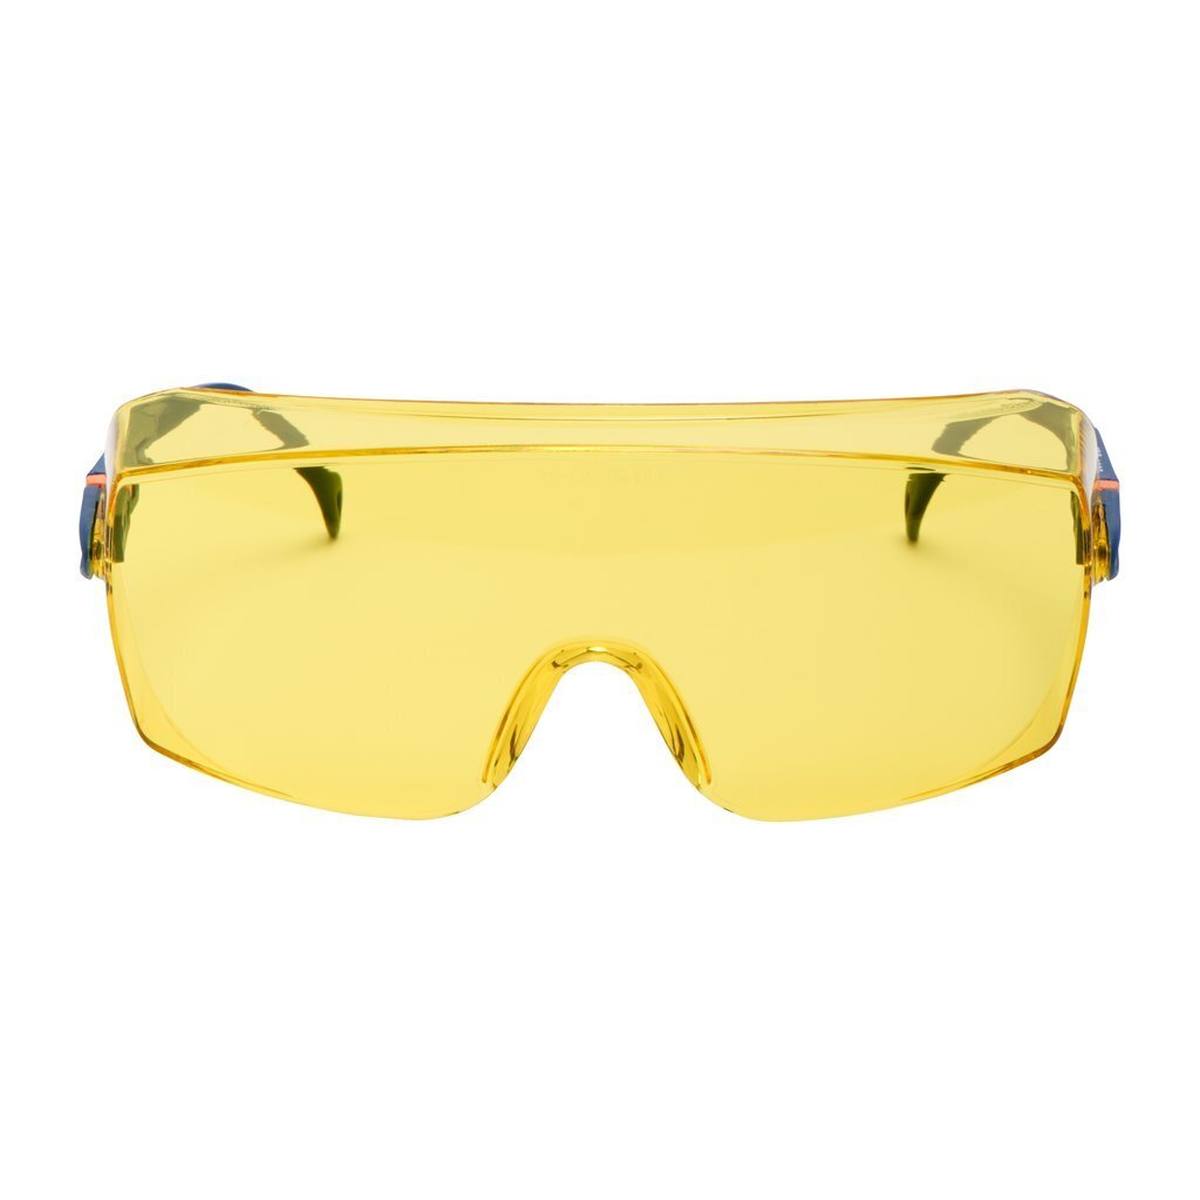 3M 2802 Occhiali di sicurezza AS/UV, PC, colorati di giallo, regolabili, ideali come sovraocchiali per portatori di occhiali